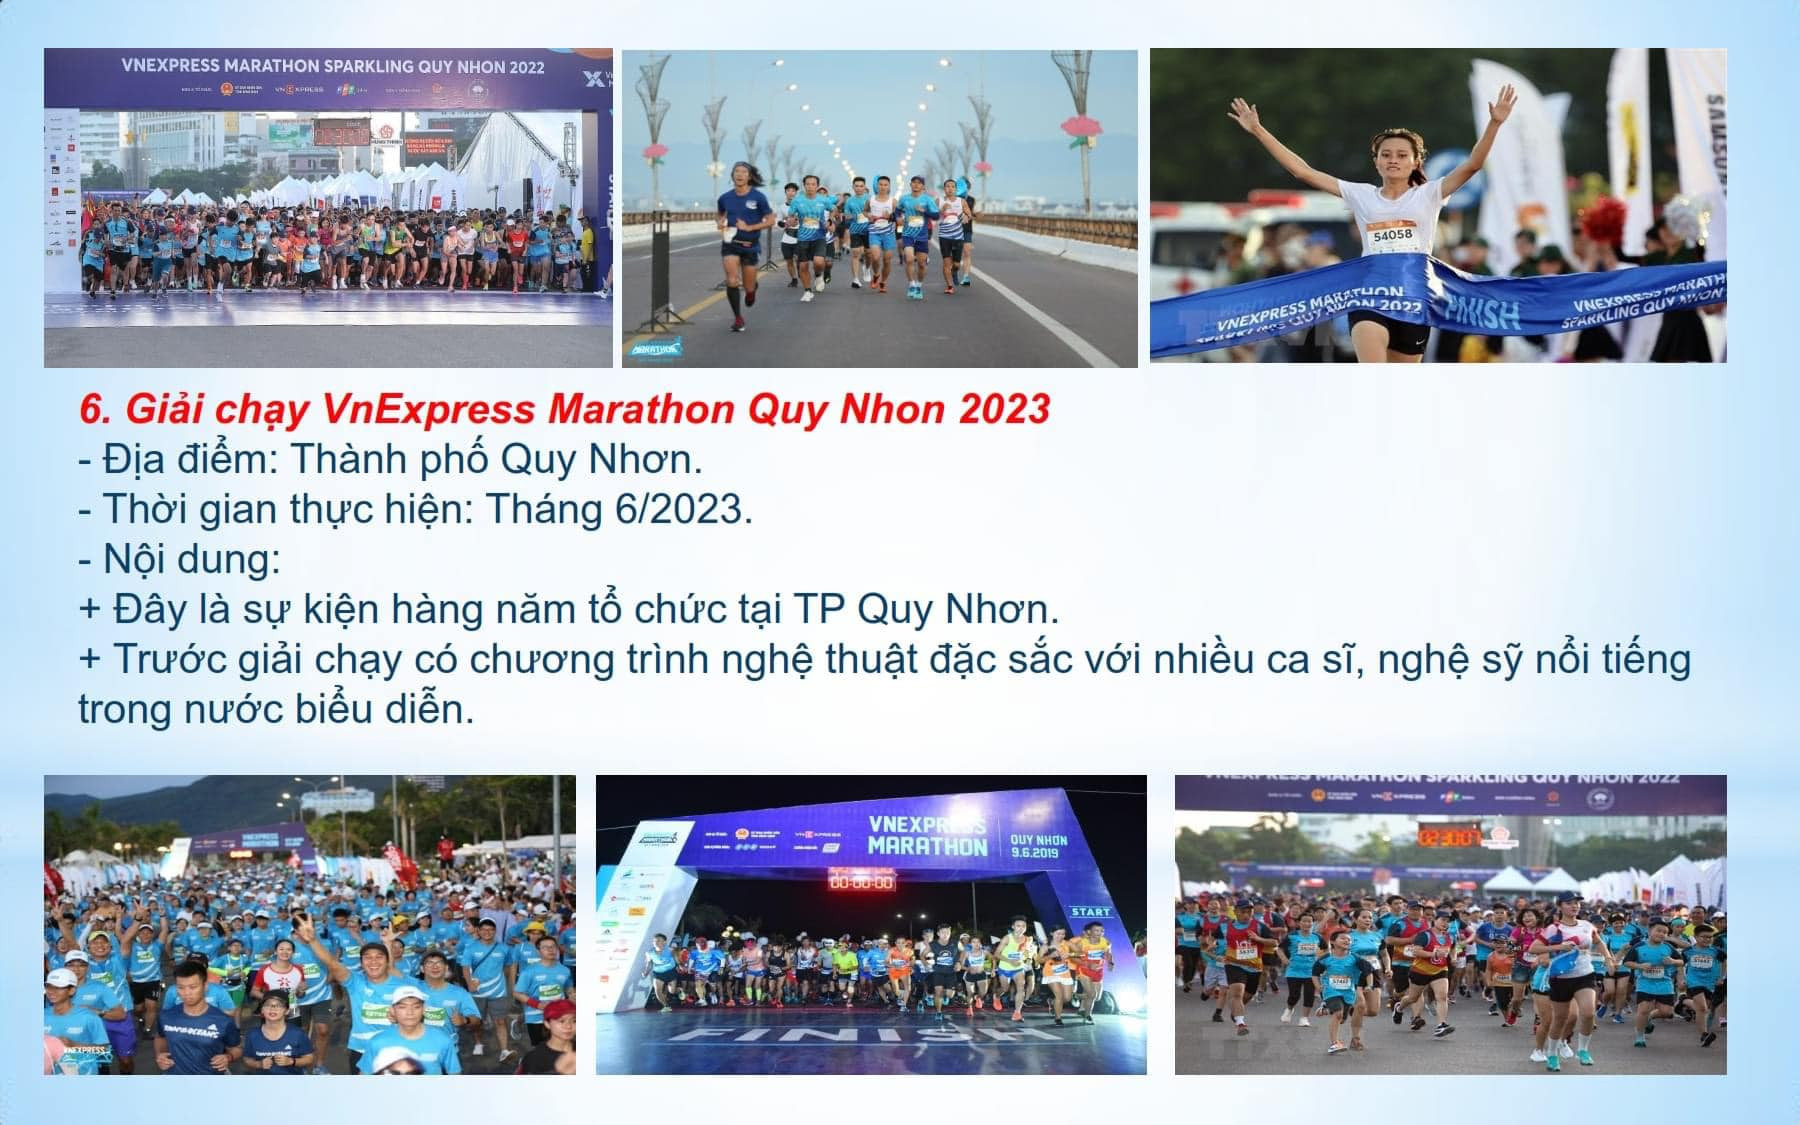 Giải chạy VnExpress Marathon Quy Nhon 